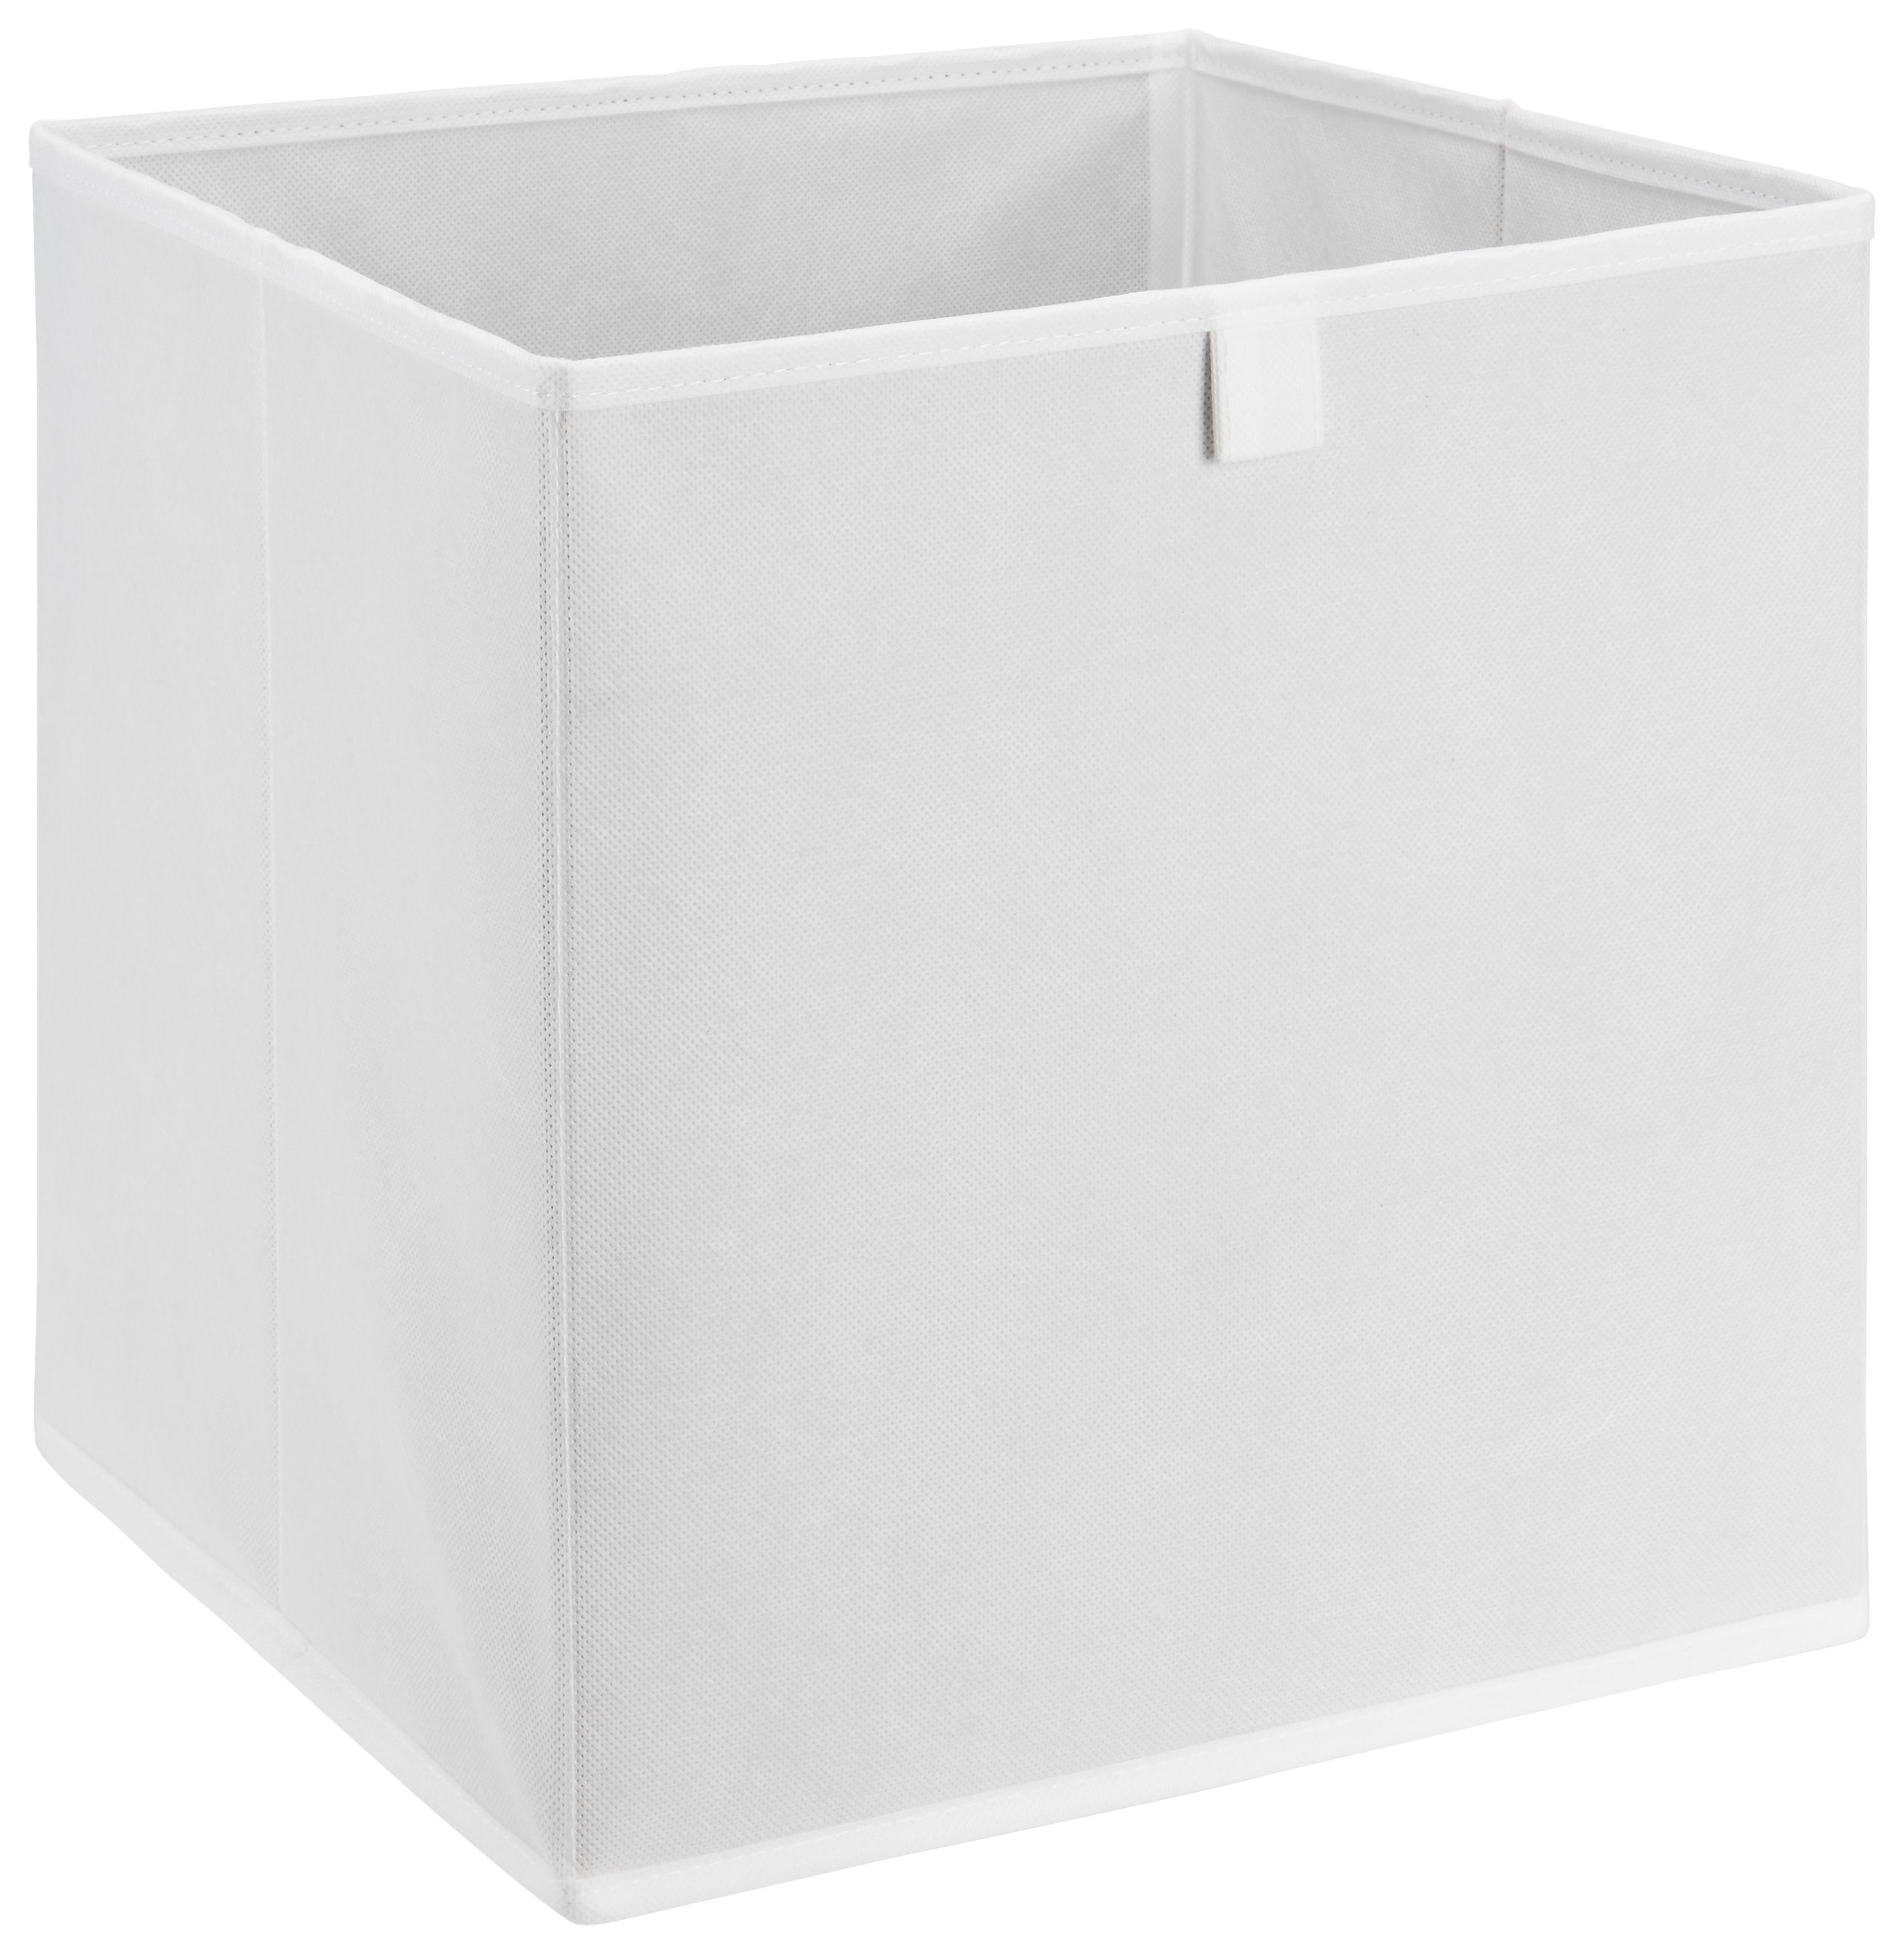 Aufbewahrungsbox Nino in Weiß - Weiß, MODERN, Karton/Textil (32/32/32cm) - Modern Living